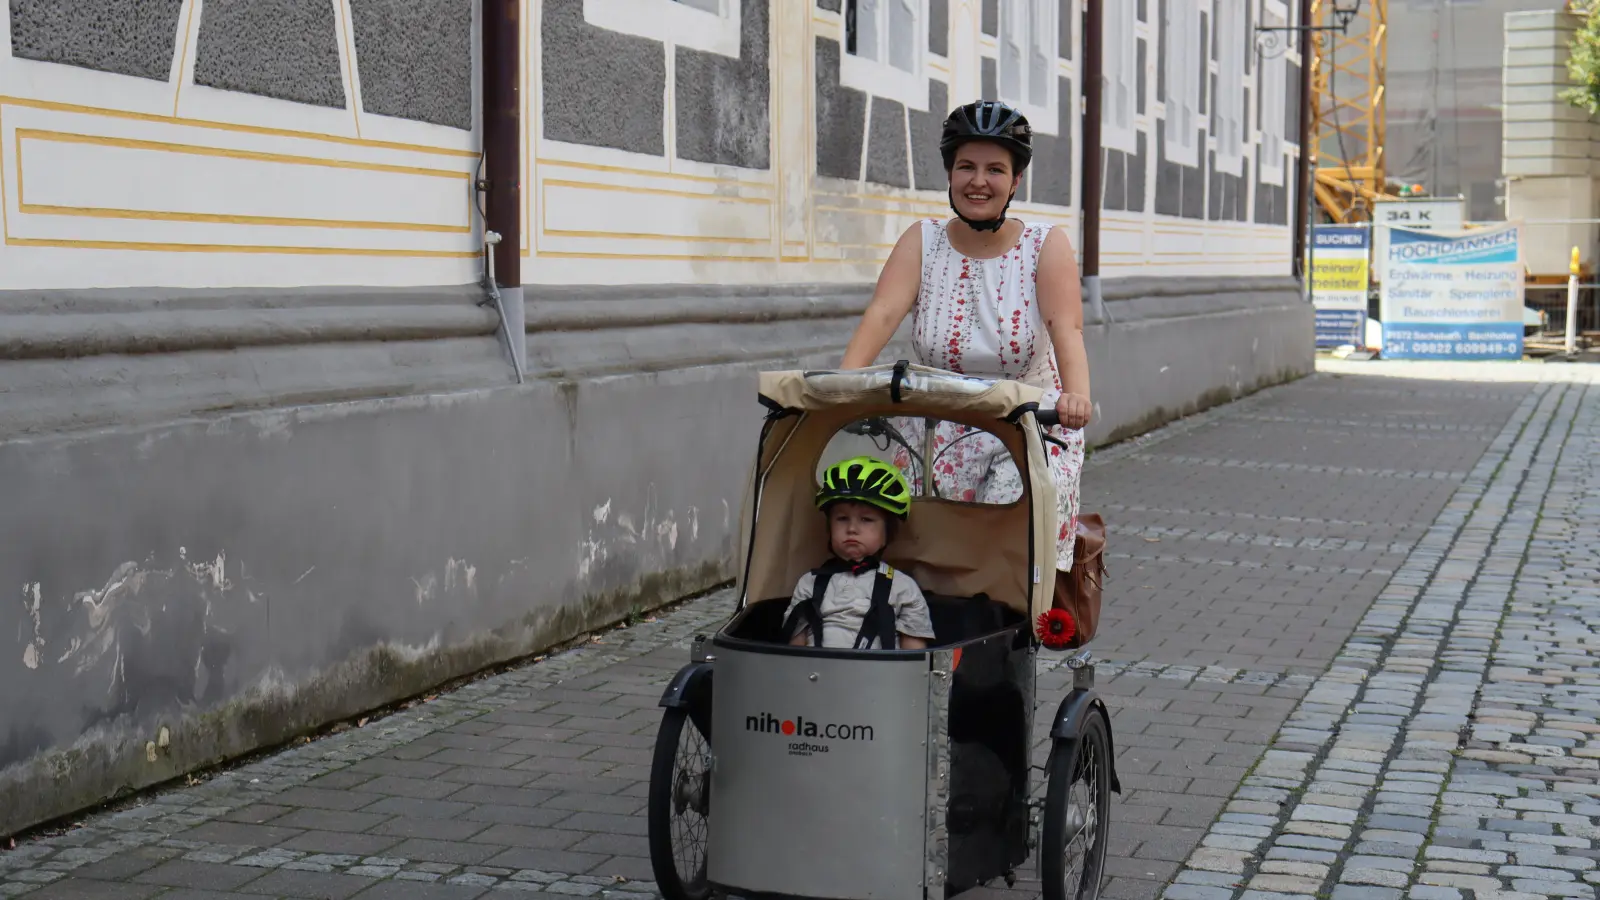 Mit dem Lastenrad legt Constanze Osiander gemeinsam mit ihrem Sohn viele kürzere Strecken zurück. Beim Reisen setzt sie oft auf die Bahn. (Foto: Antonia Müller)